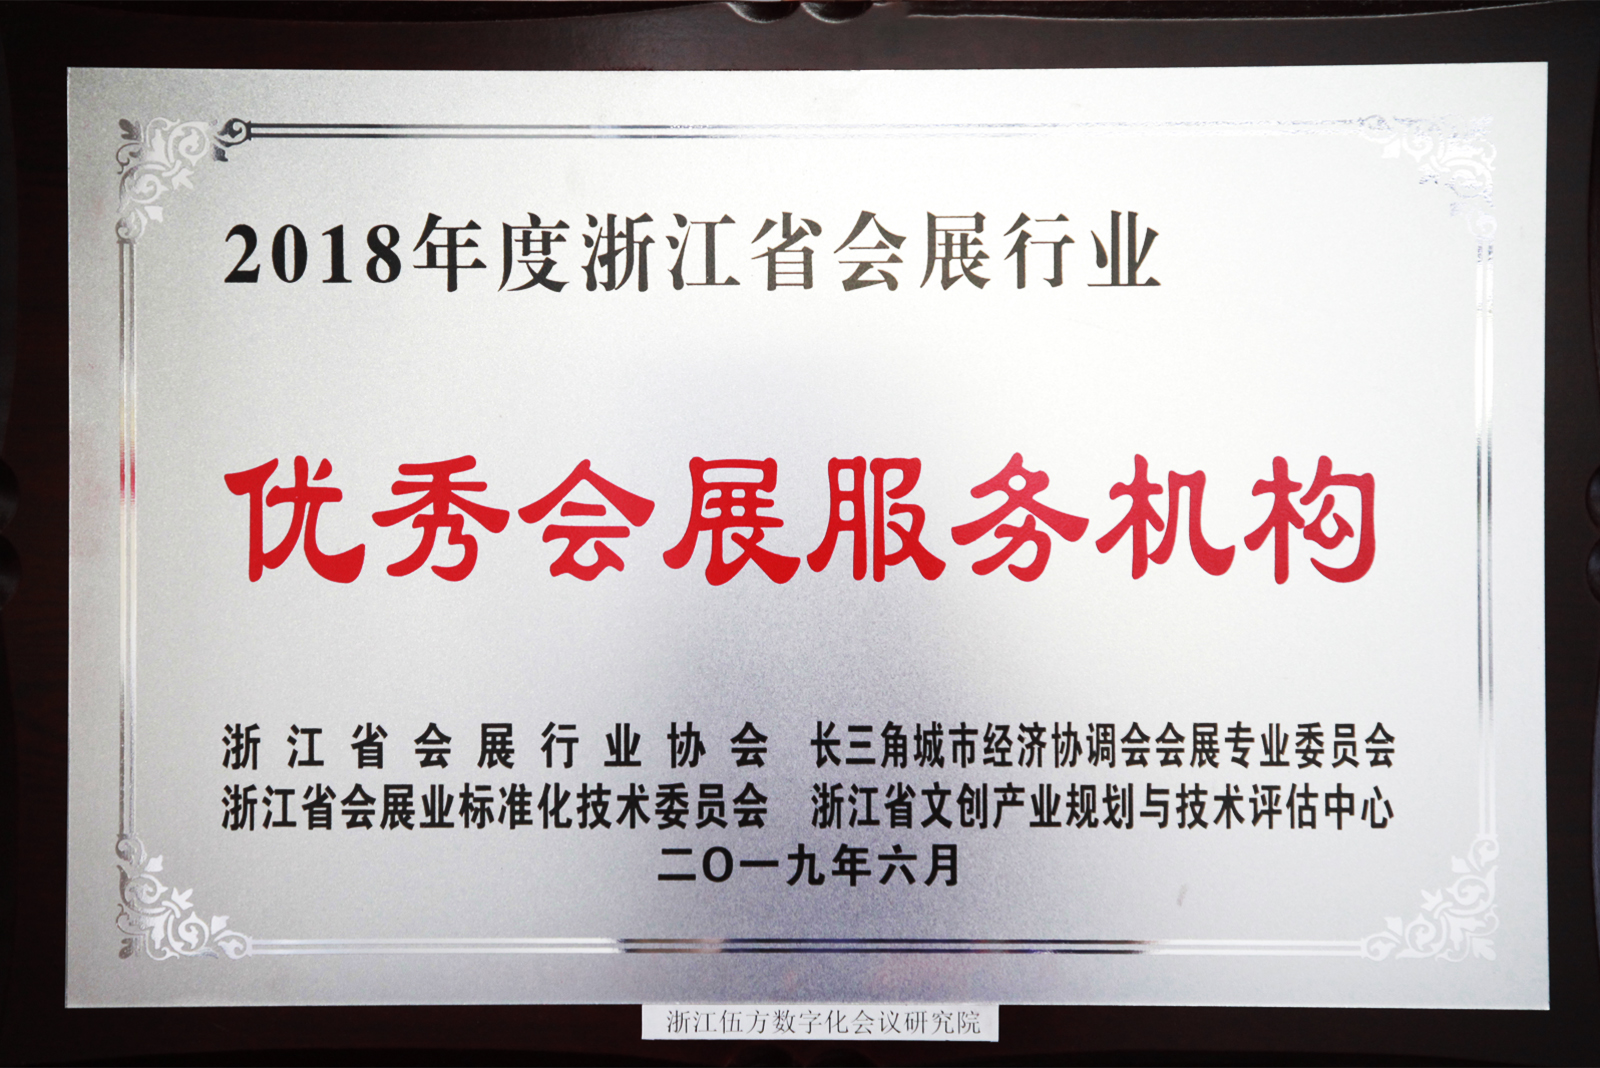 伍方被评为“浙江省会展行业优秀会展服务机构”-1